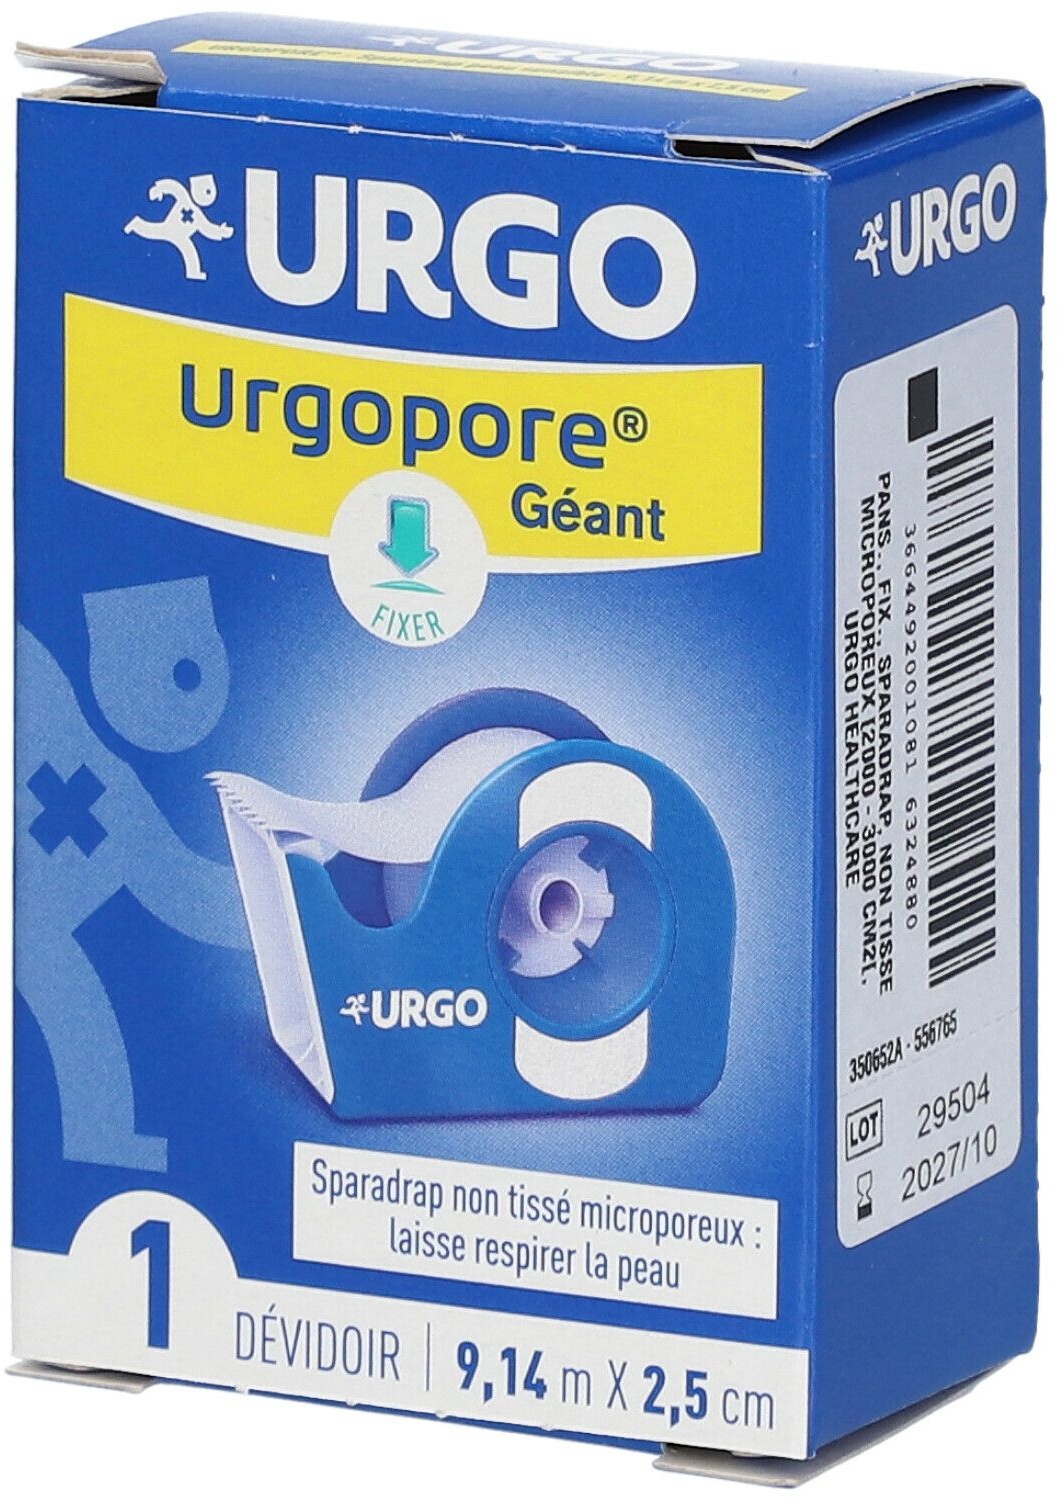 URGO Urgopore® Géant Sparadrap non tissé microporeux 9,14 m x 2,5 cm 1 pc(s) pansement(s)